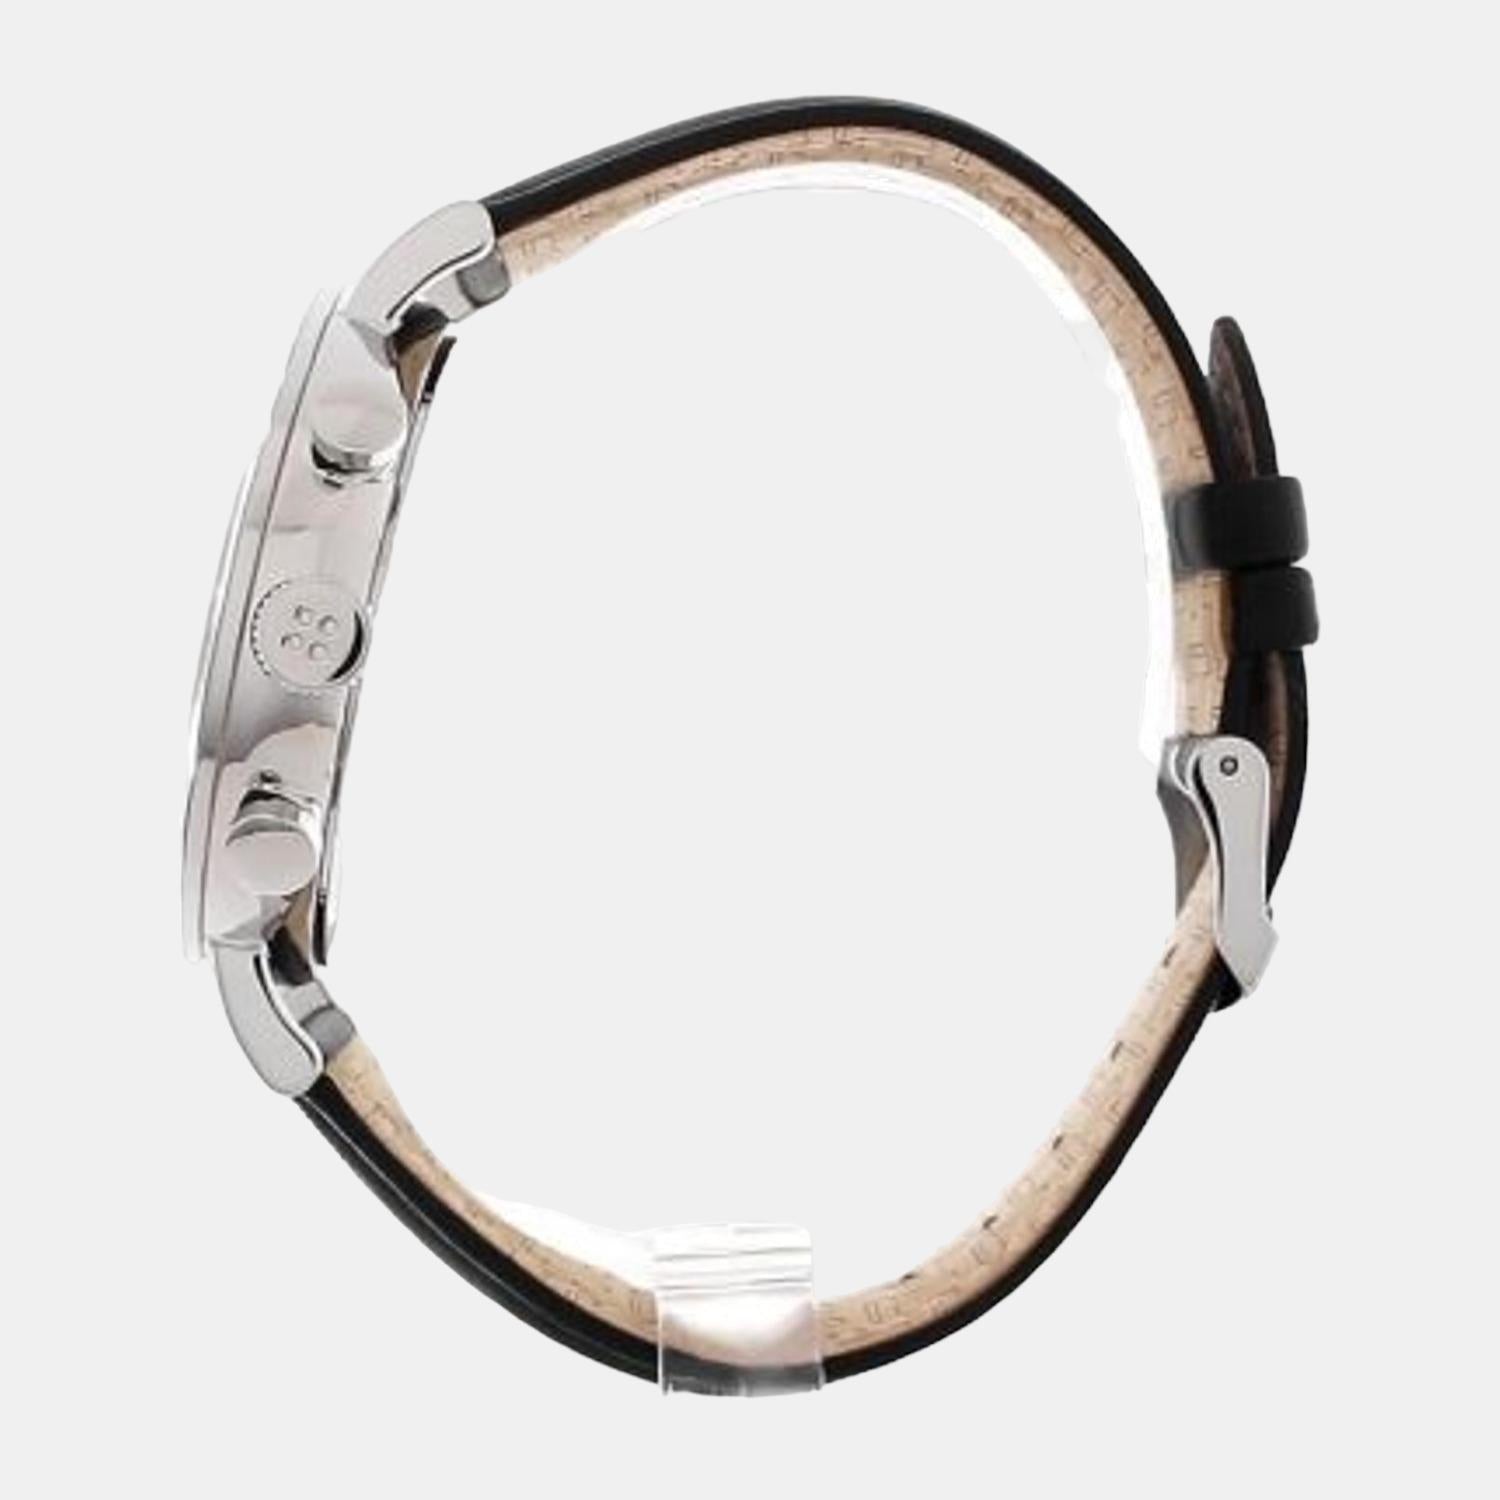 Ted Baker carbon fibre leather bracelet in black | ASOS